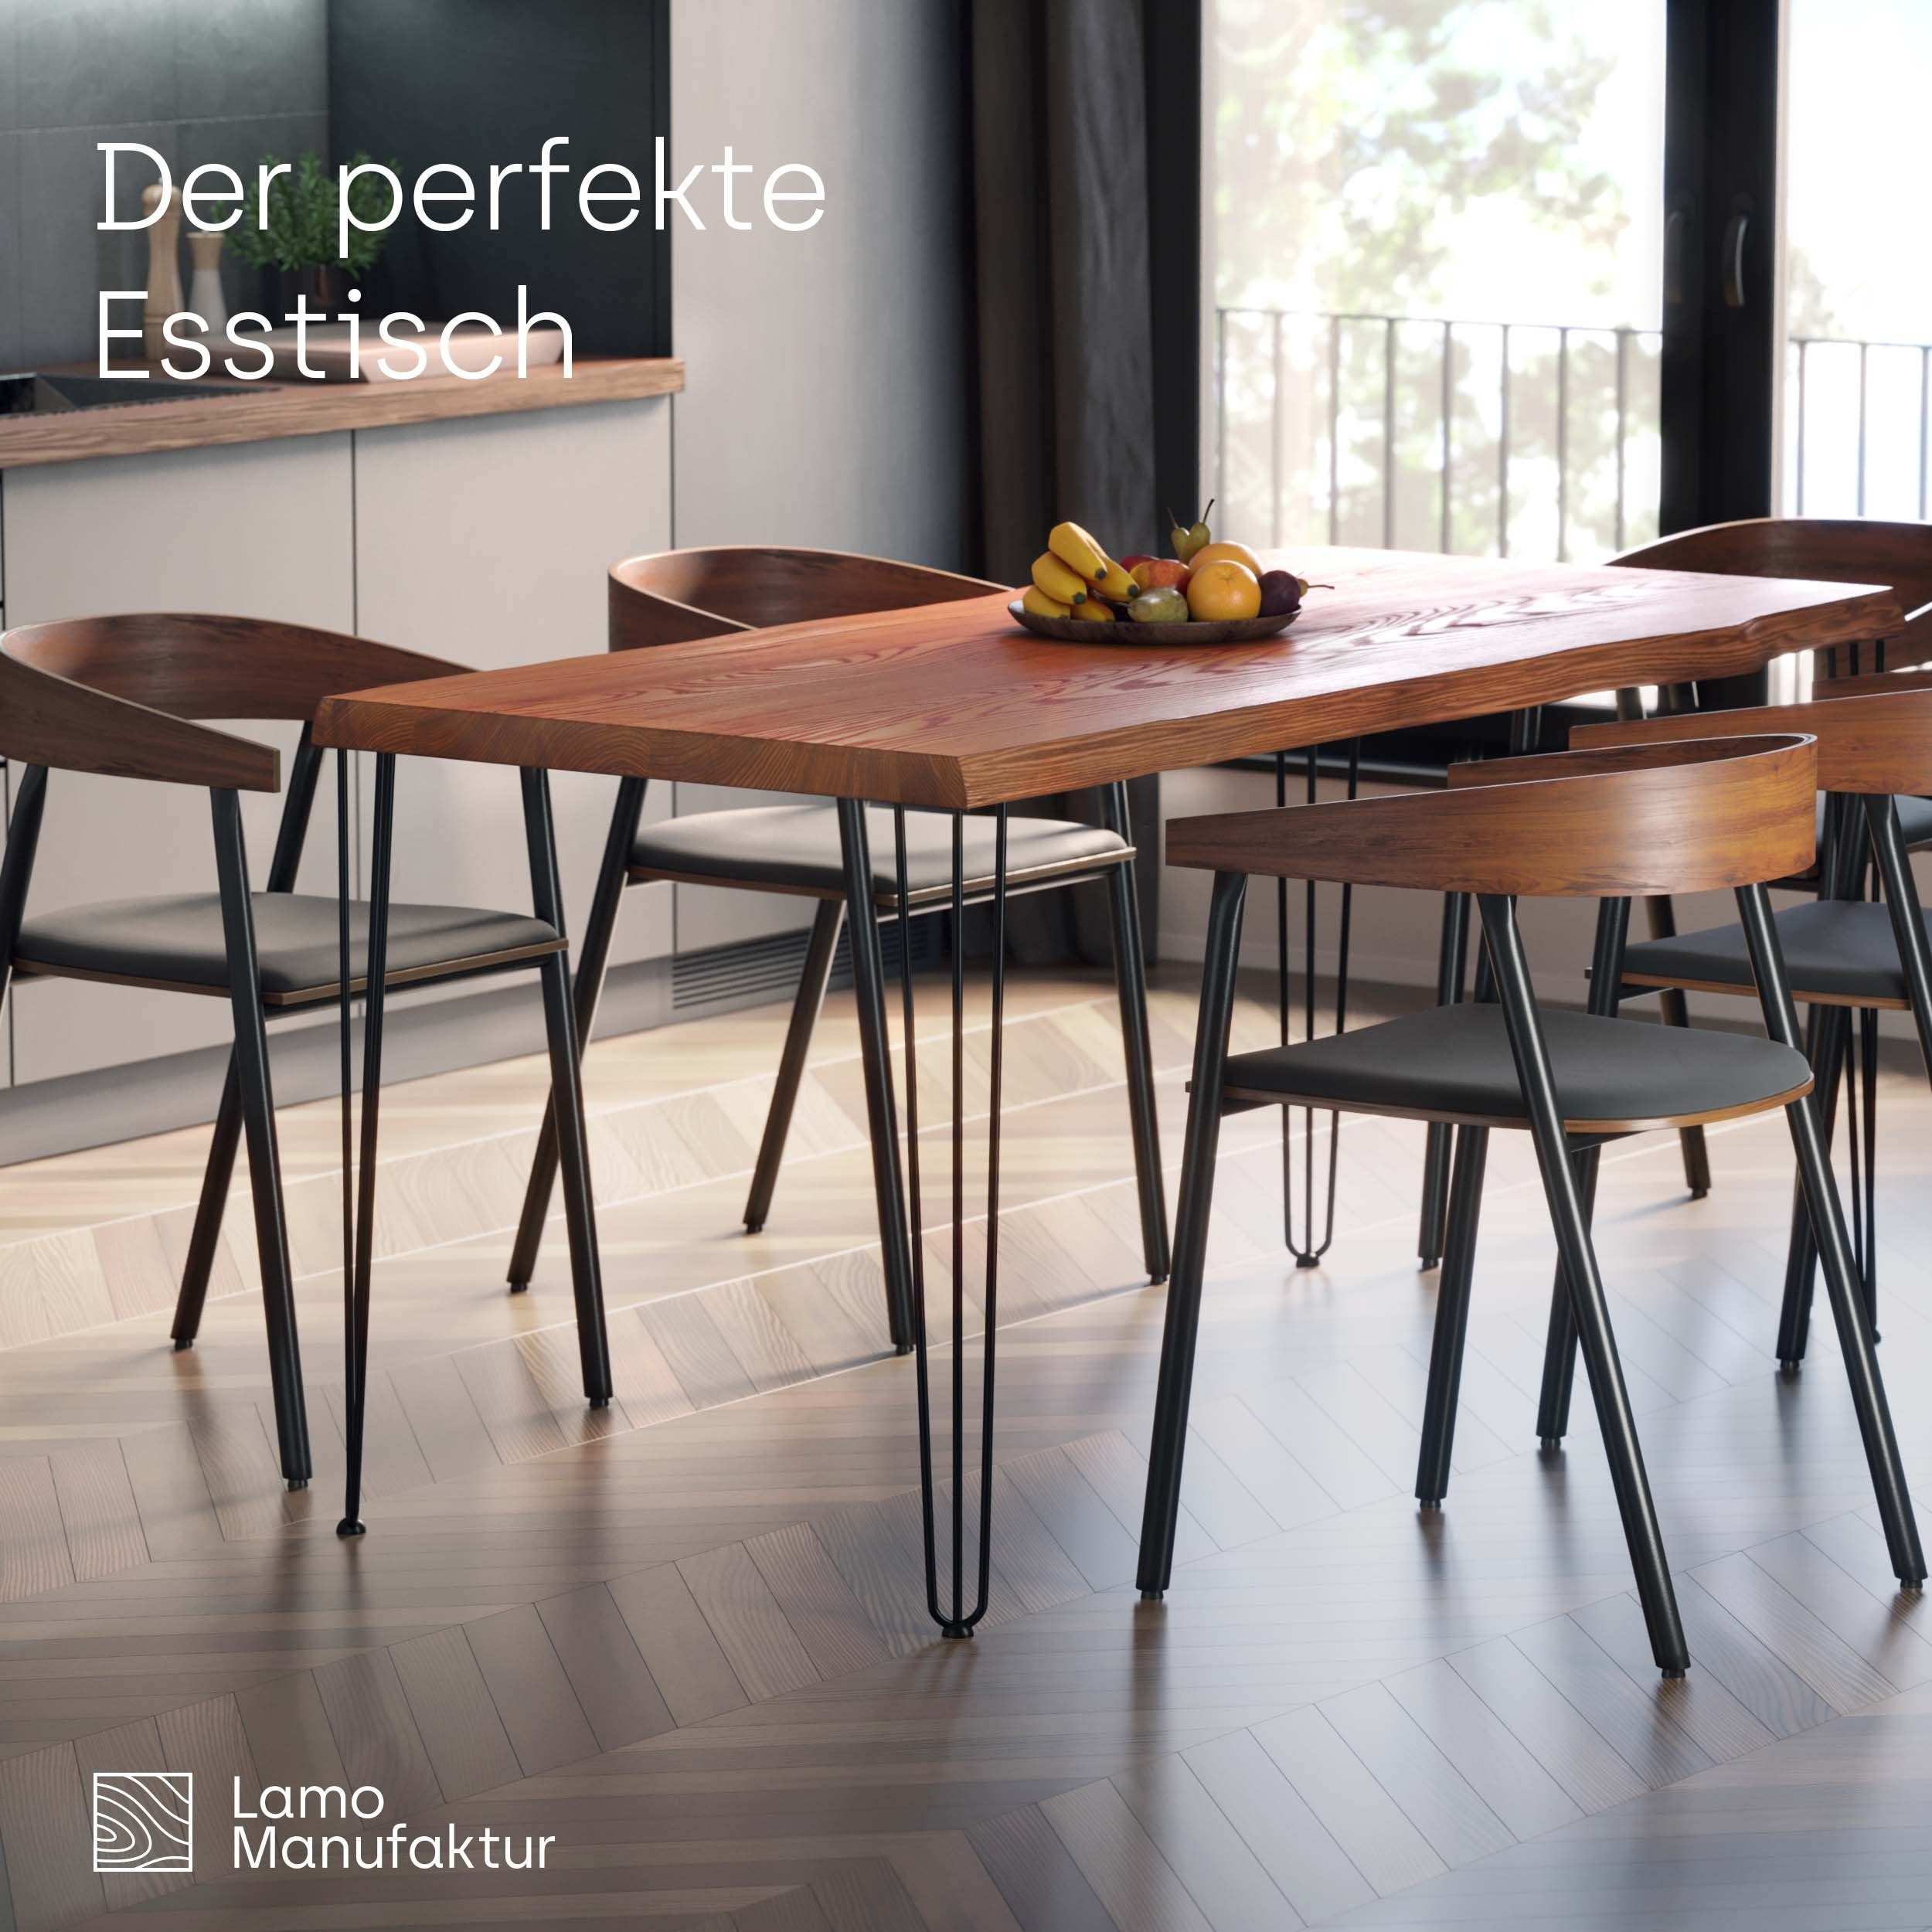 (1 massiv Baumkante LAMO Esstisch inkl. Tisch), Schwarz Natur Manufaktur | Creative Massivholz Metallgestell Baumkantentisch